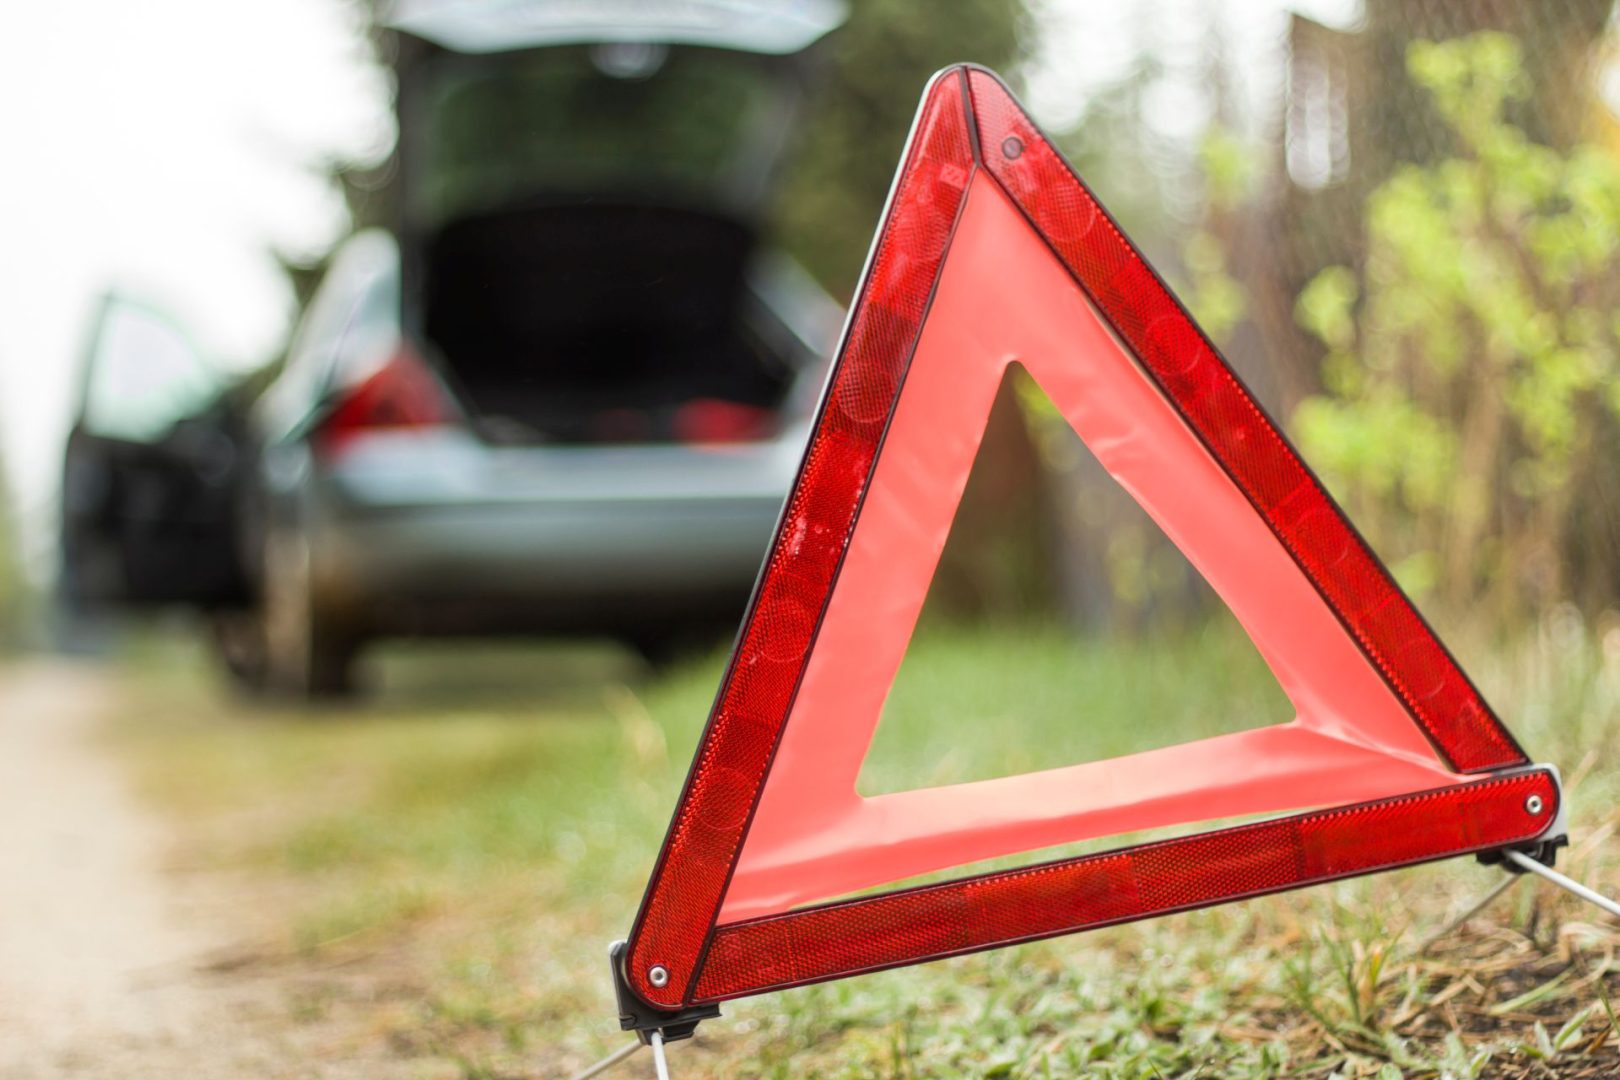 Awaria auta w trasie – wszystko co musisz wiedzieć na wypadek awarii samochodu kiedy jesteś w trasie